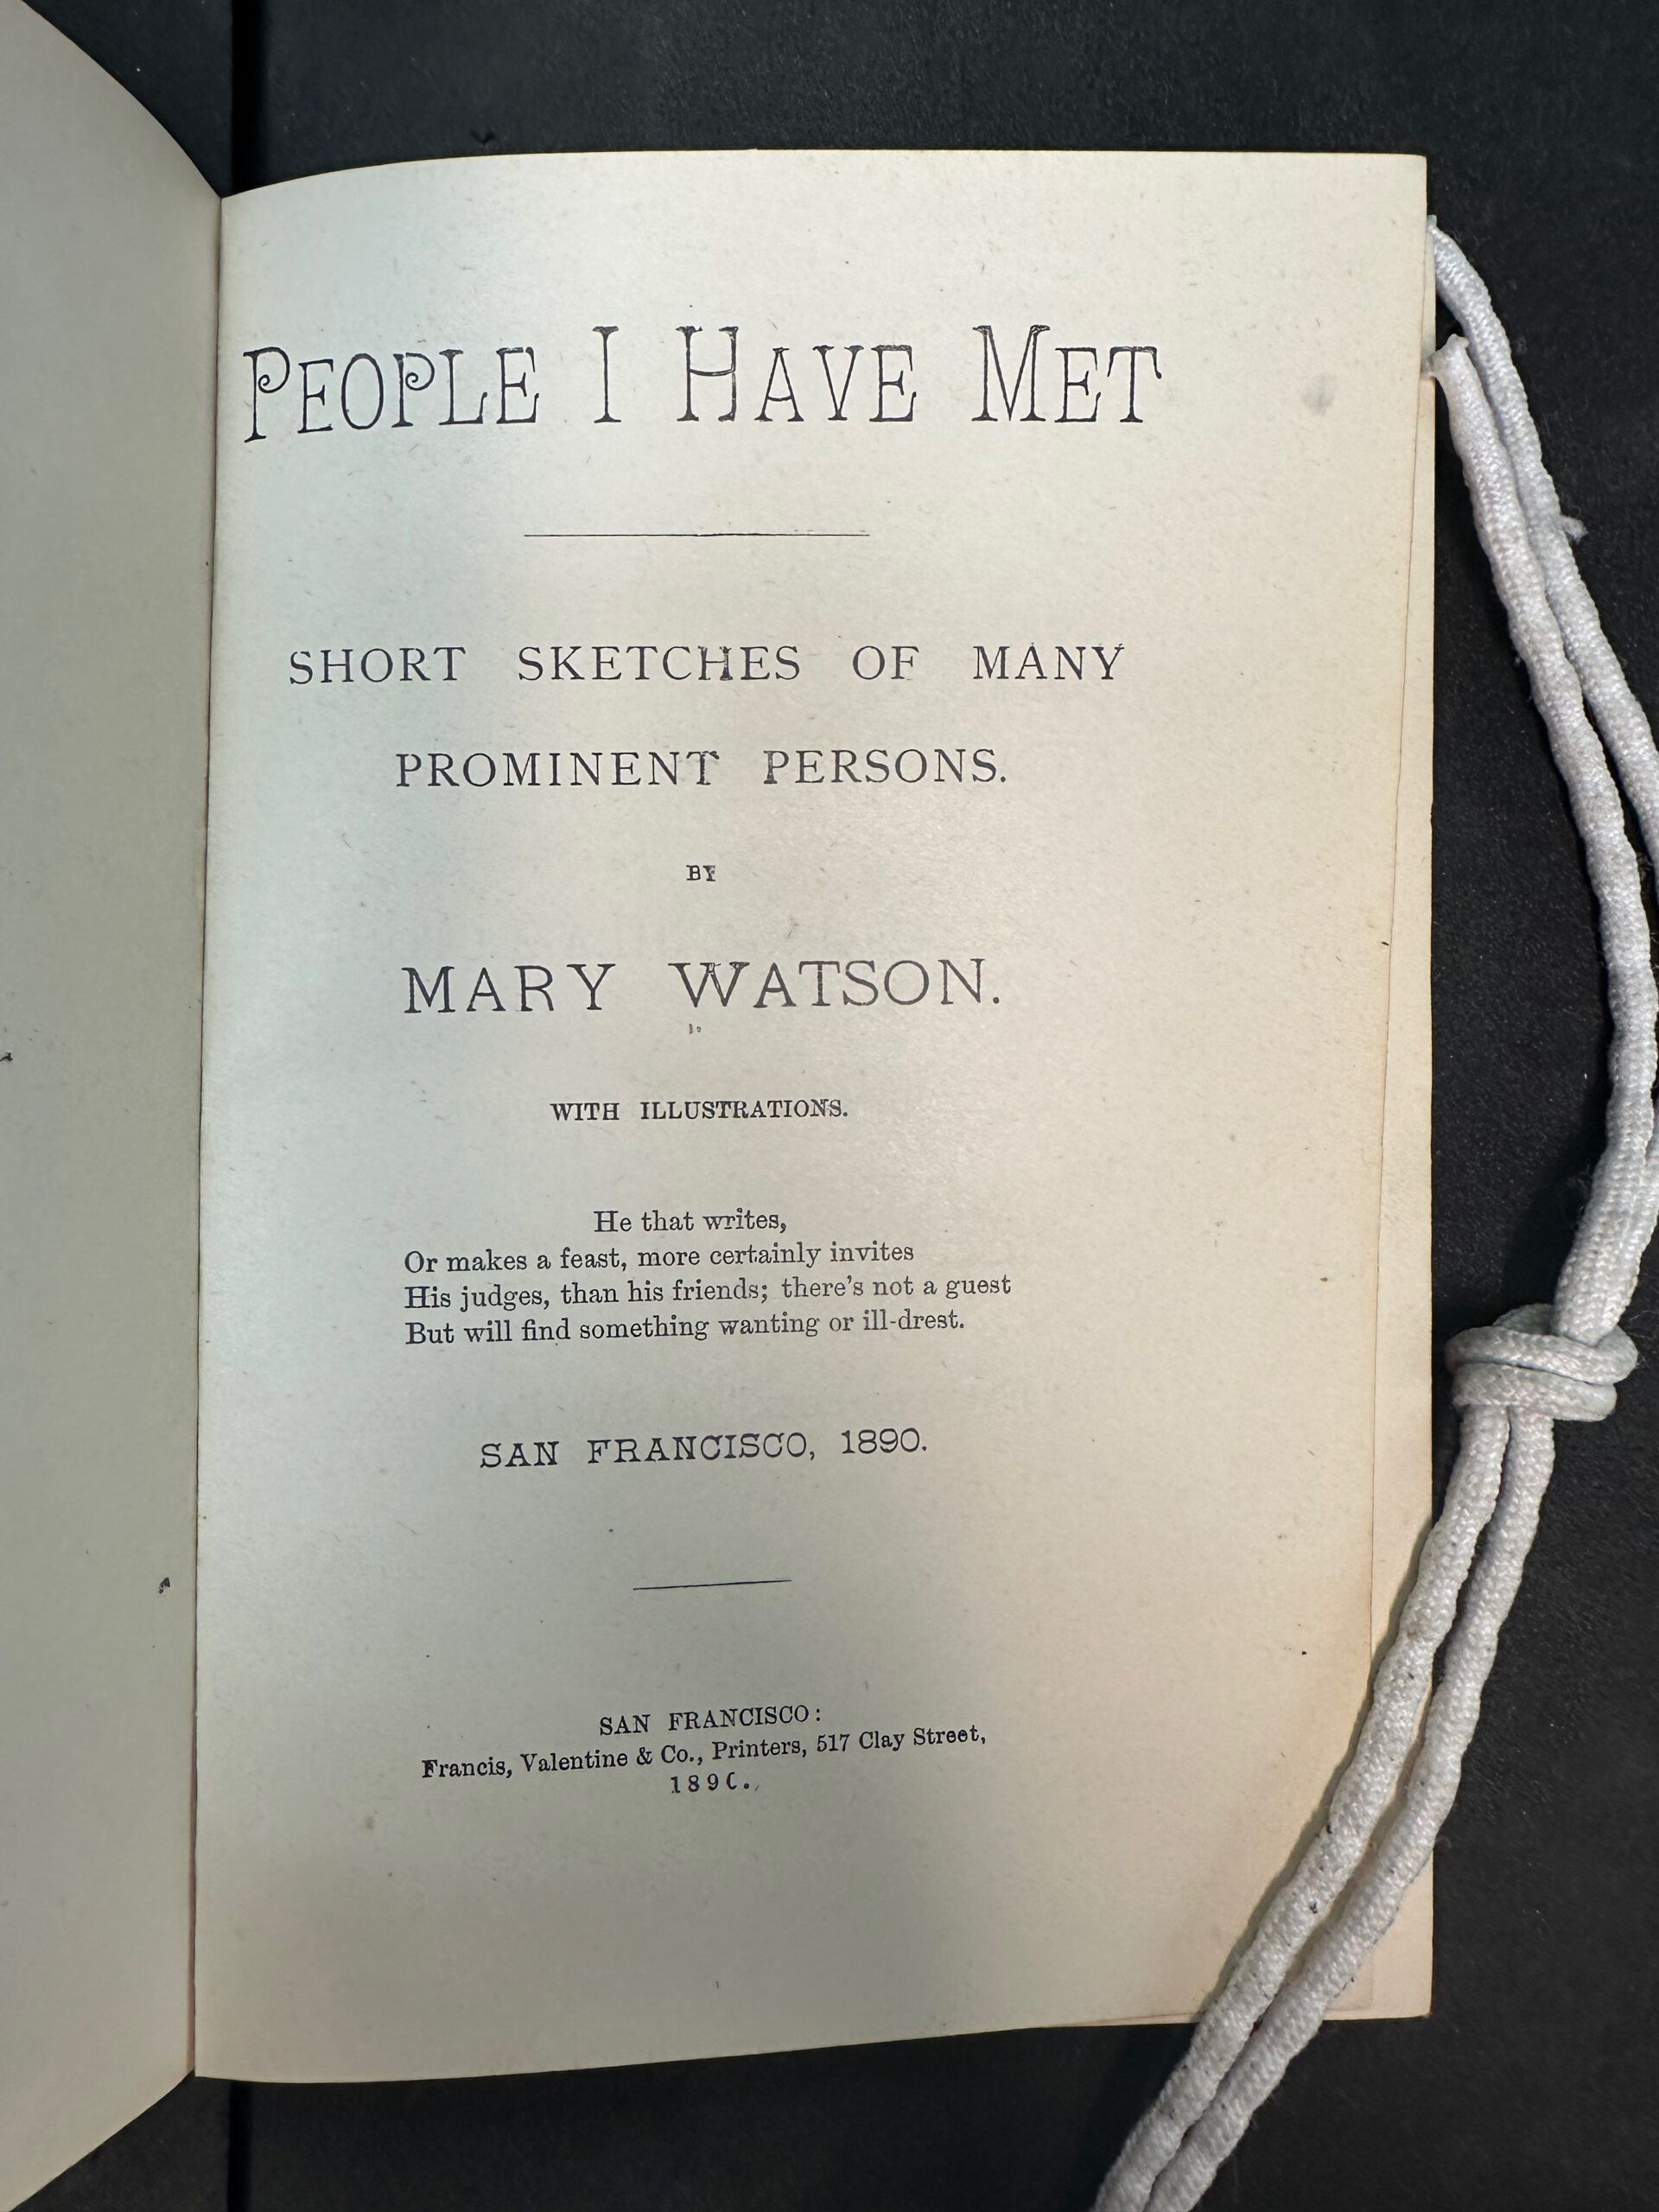 People I Have Met, 1890, PR5825 .W34 *